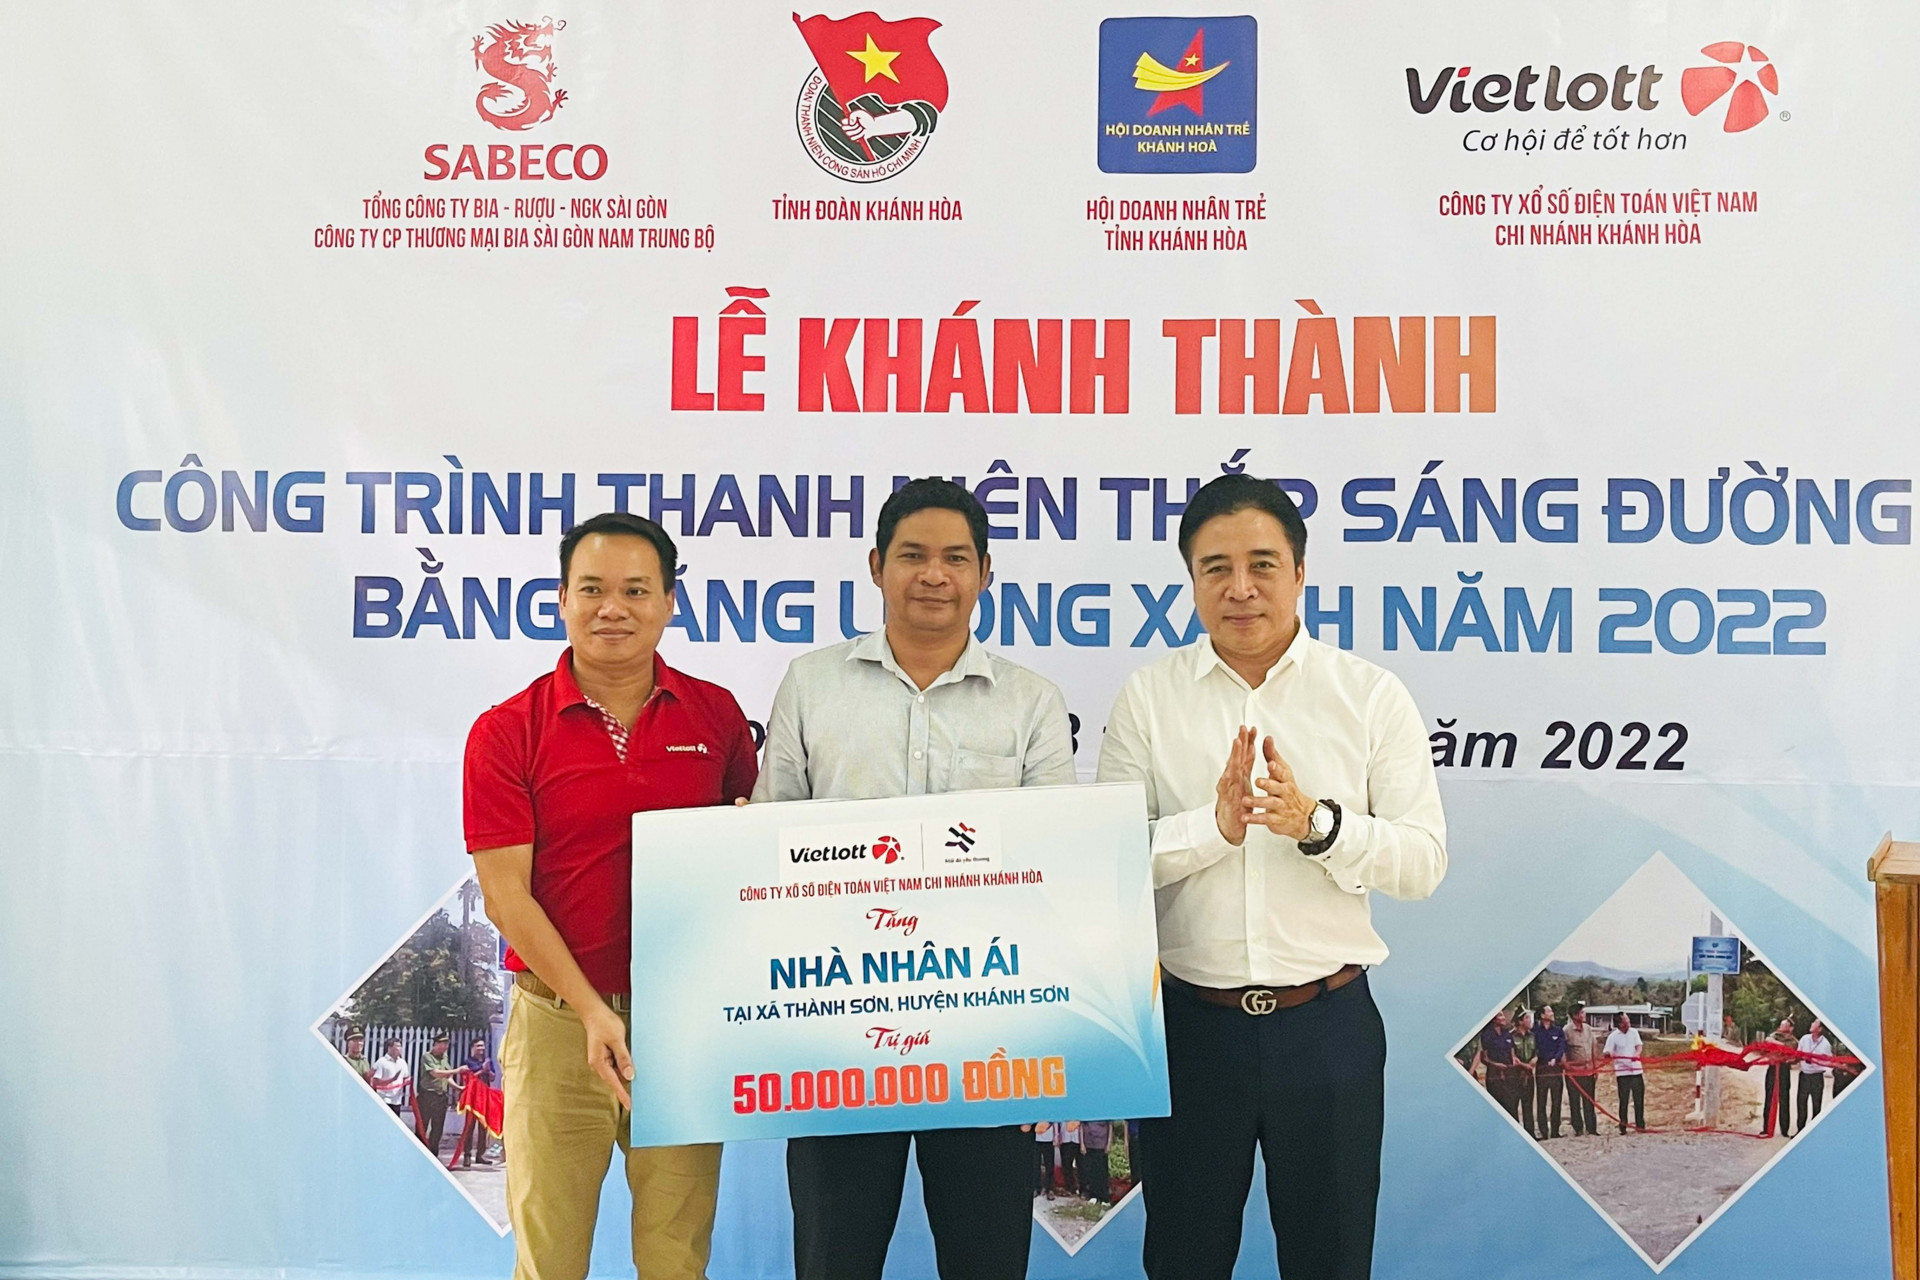 Đồng chí Nguyễn Khắc Toàn cùng đại diện Vietlott Chi nhánh Khánh Hoà trao biểu trưng hỗ trợ Nhà nhân ái cho địa phương để hỗ trợ hộ nghèo của huyện